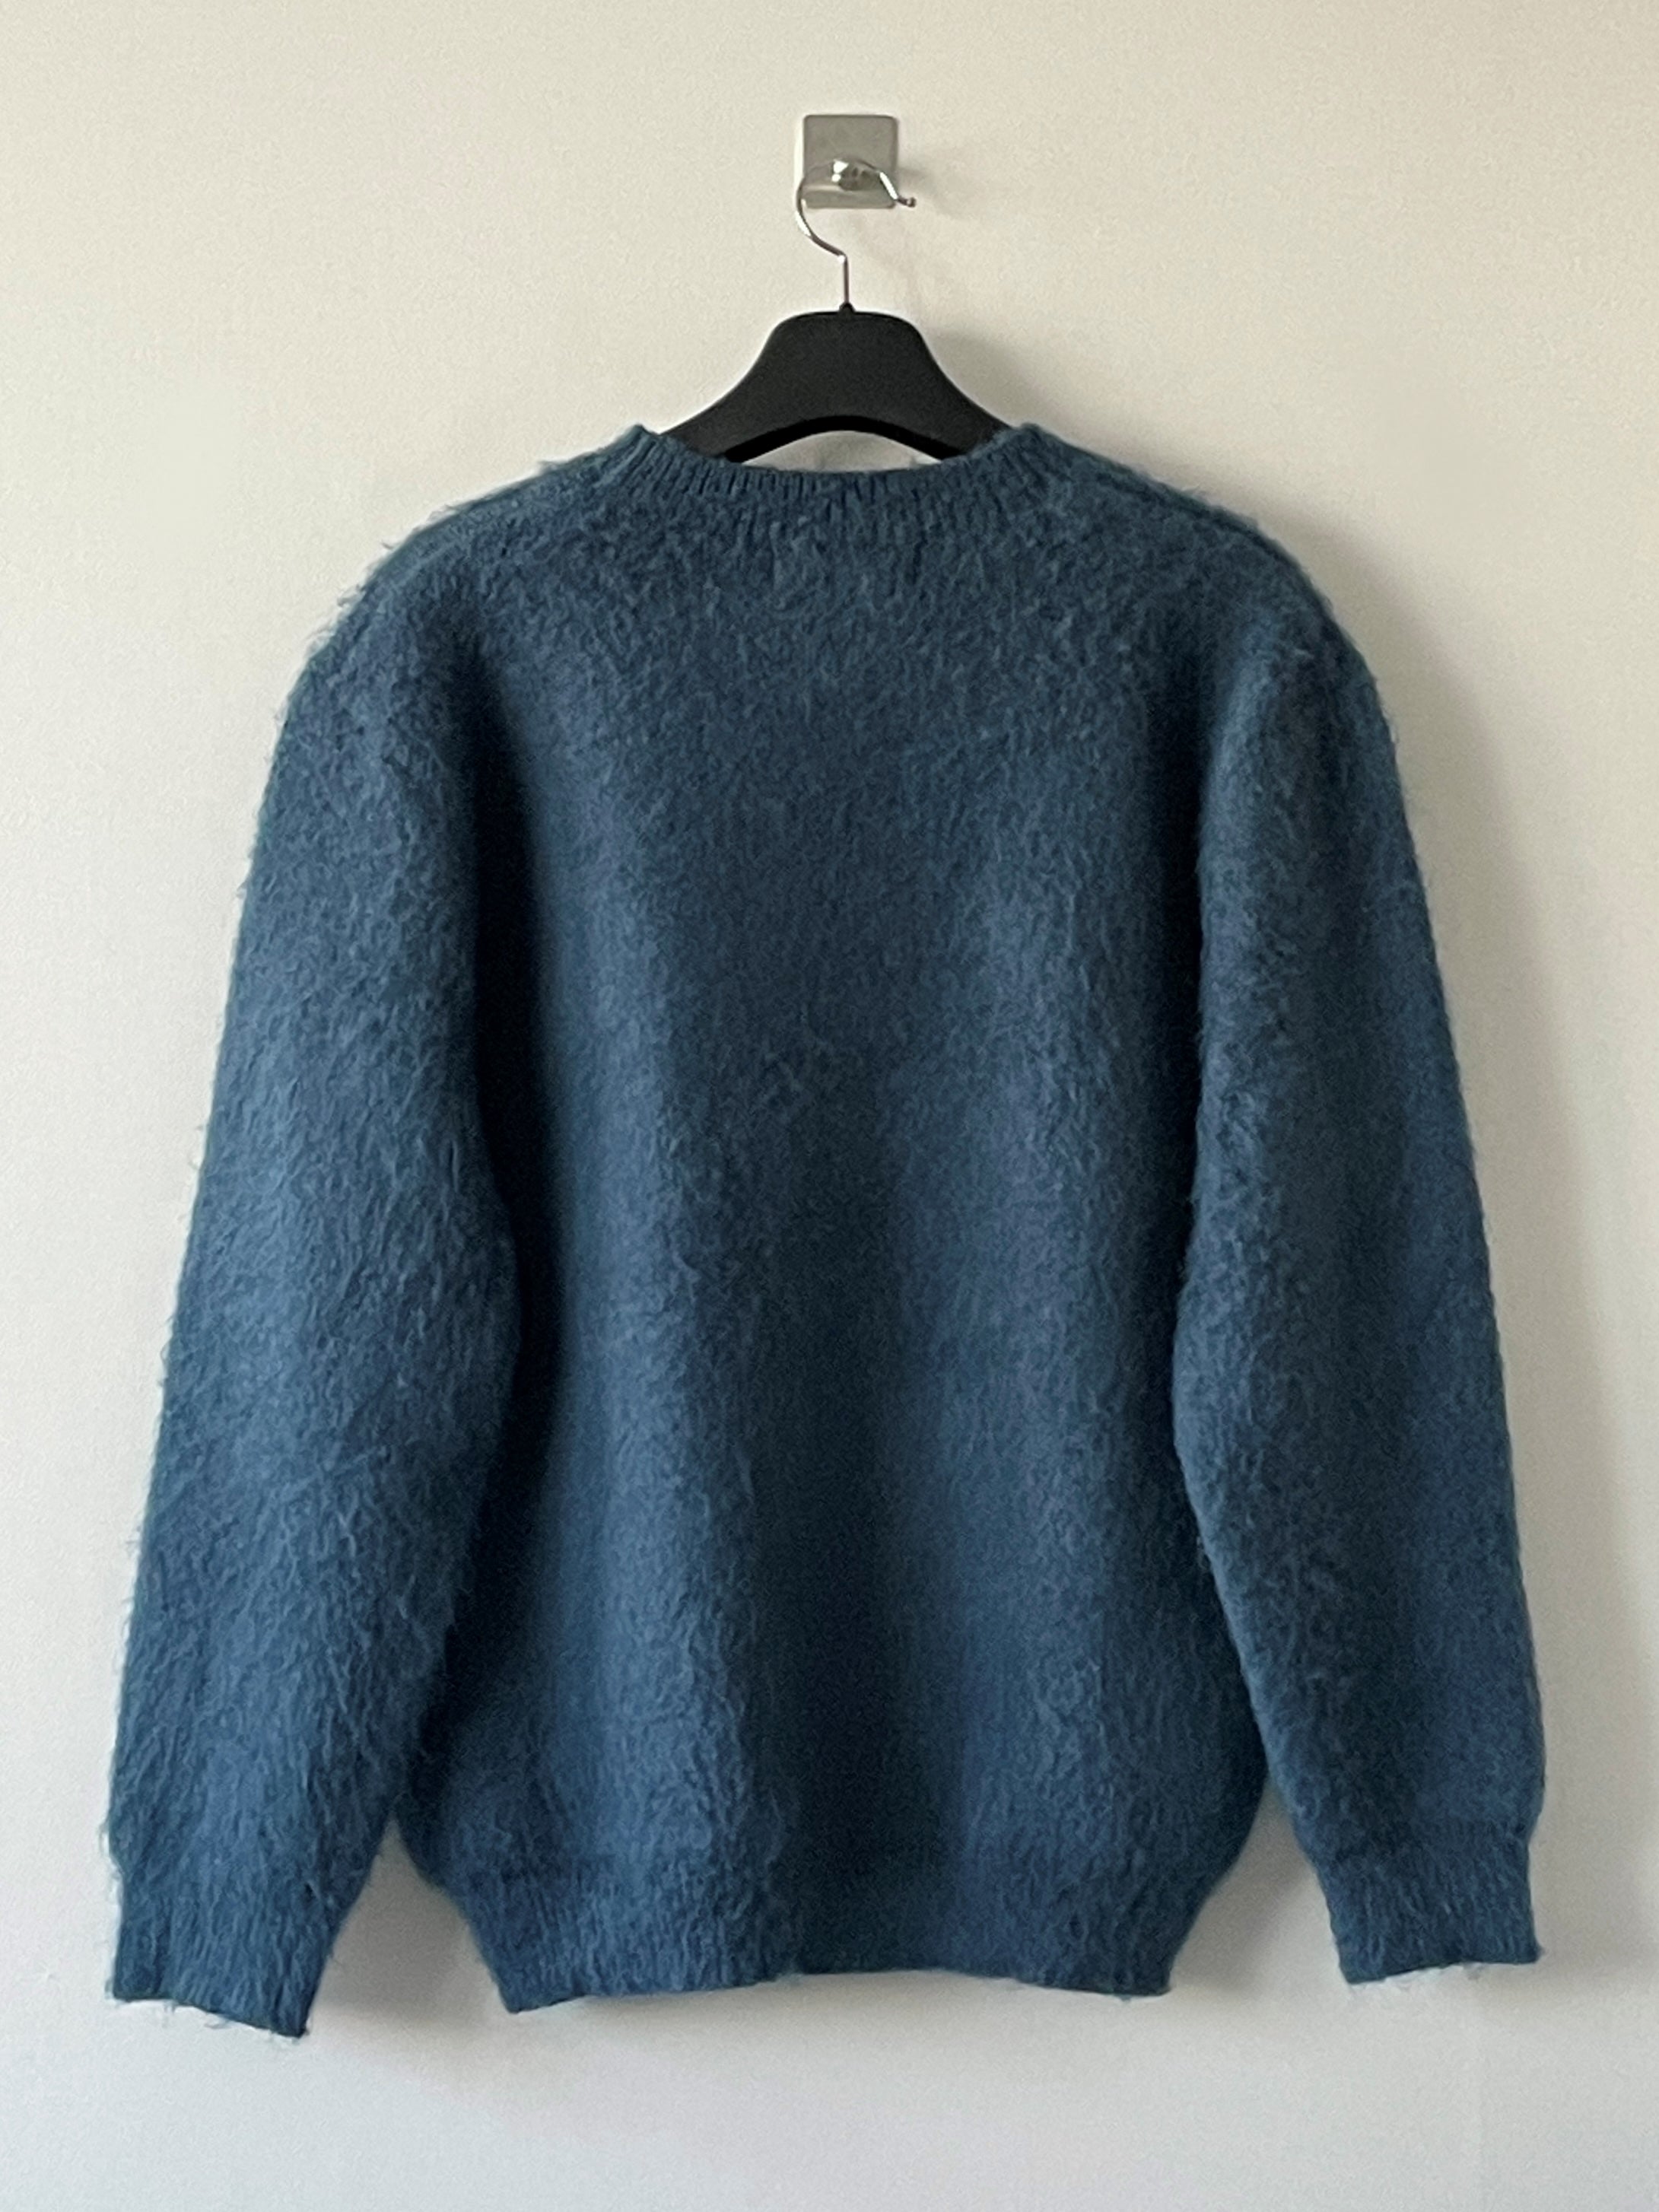 Soft mohair knit